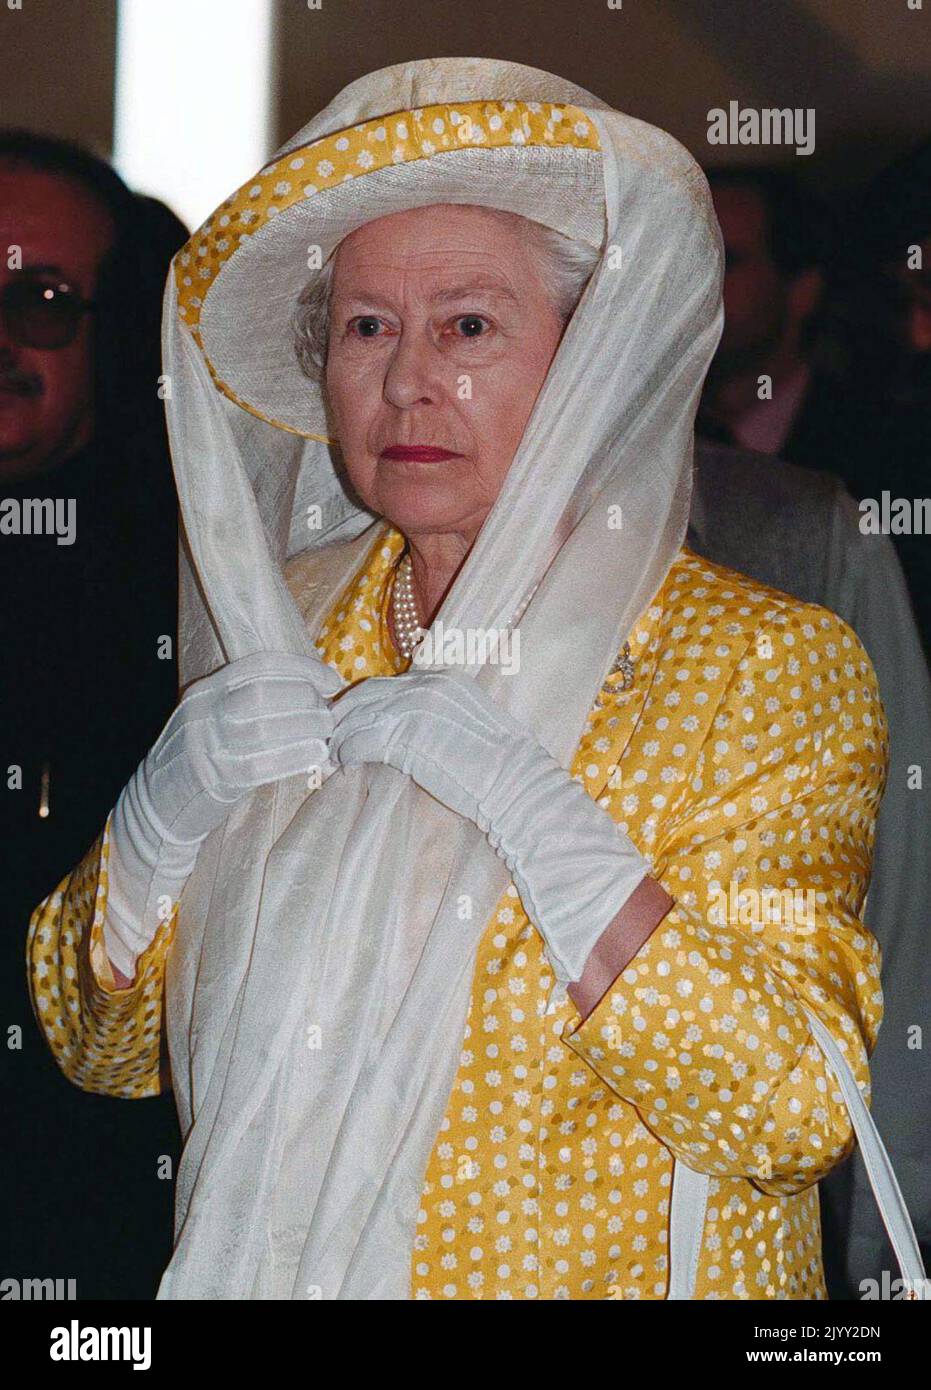 Foto de la FIE de fecha 7/10/1997 de la reina Isabel II con un pañuelo en la cabeza, mientras estaba de gira por la mezquita Shah Faisal en Islamabad, Pakistán. Fecha de emisión: Jueves 8 de septiembre de 2022. Foto de stock